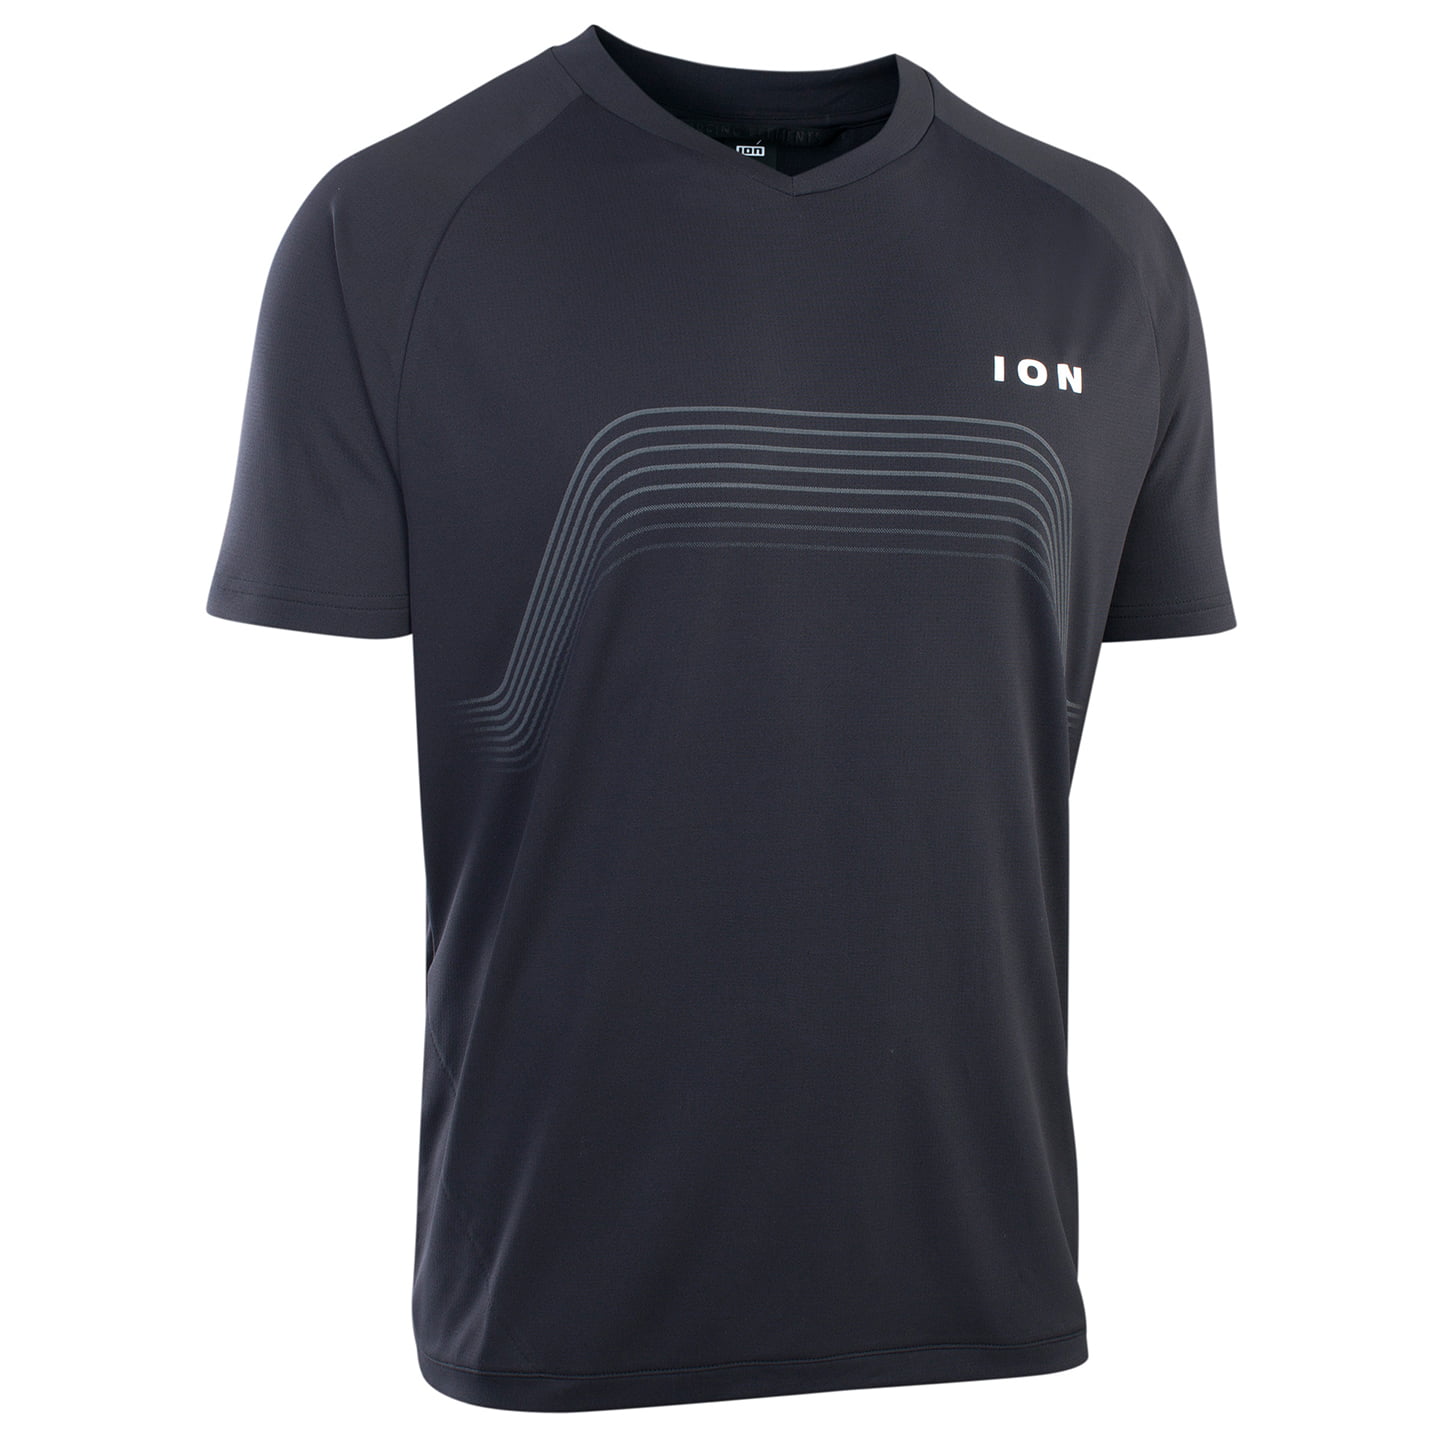 ION Traze Bike Shirt, for men, size M, Cycling jersey, Cycling clothing